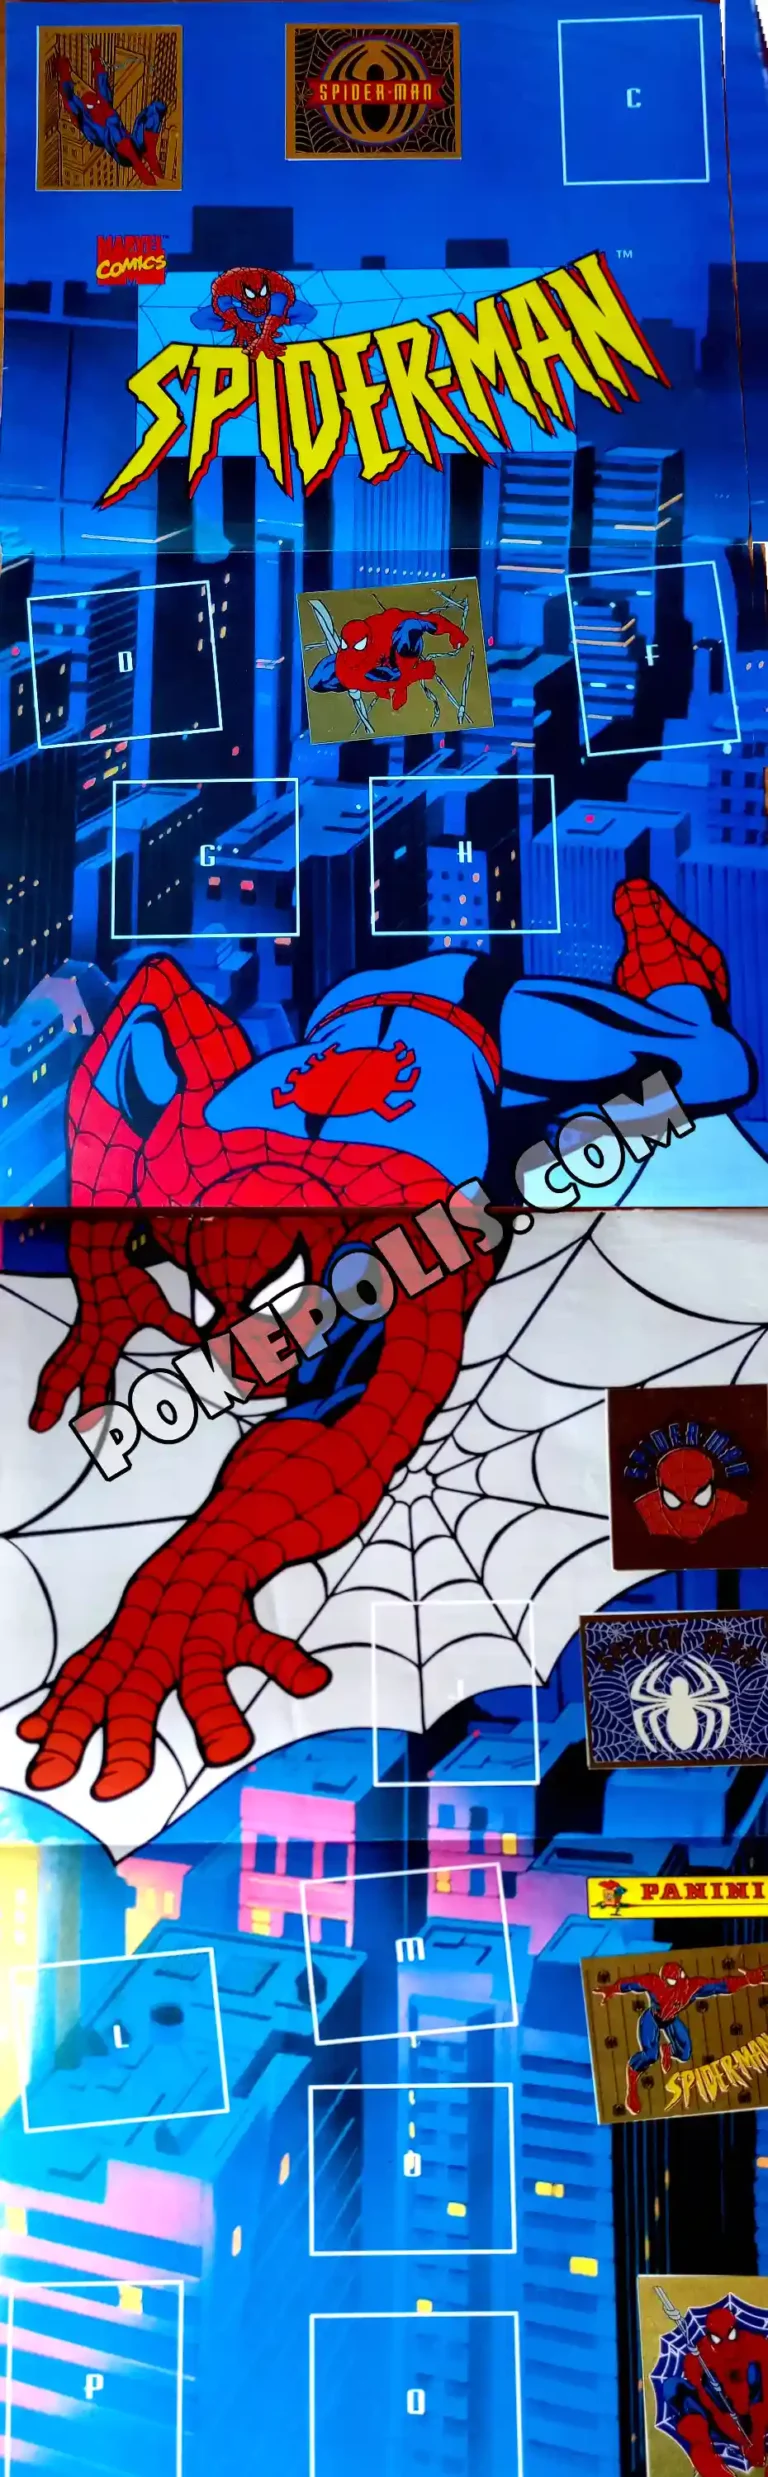 spider-man album kolekcjonerski z naklejkami panini opowiadający o przygodach człowieka pająka znanych z serialu animowanego plakat